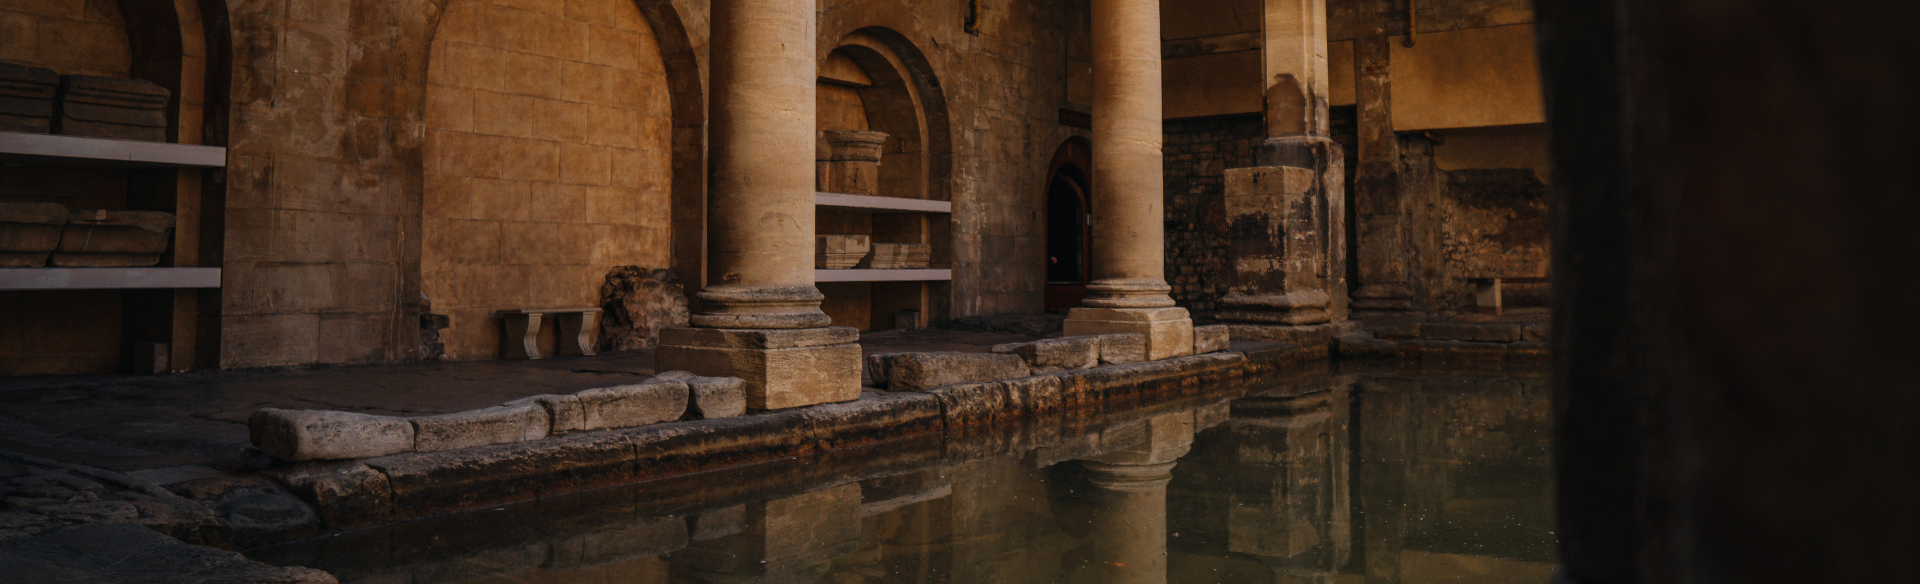 Roman Baths UK